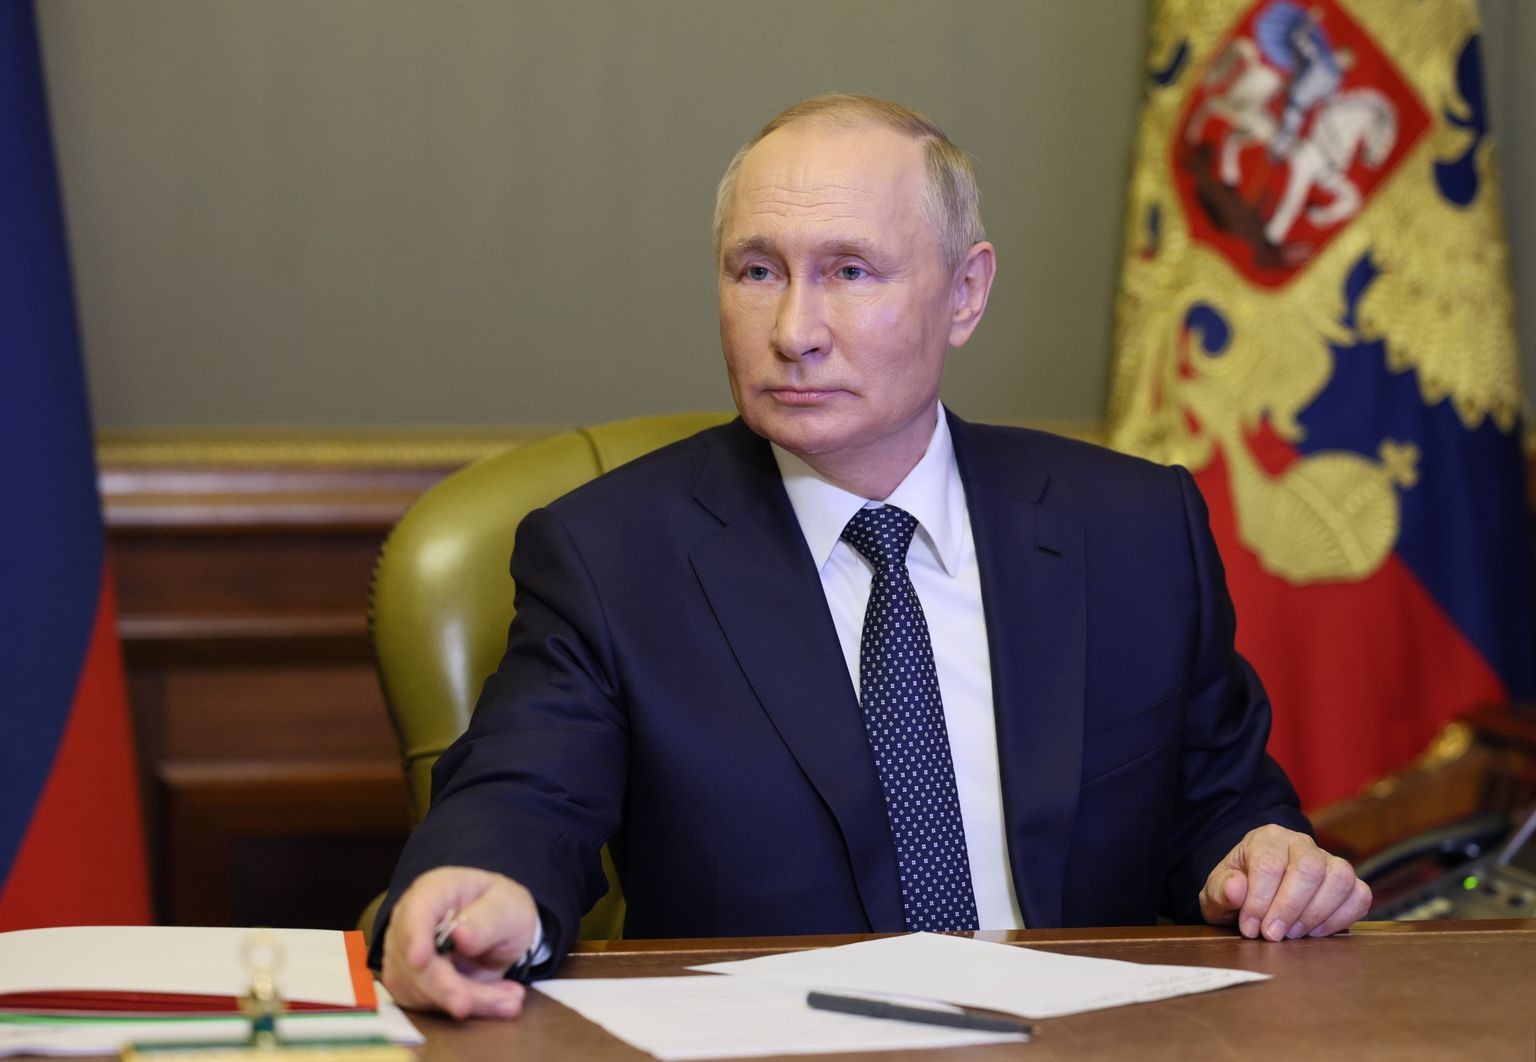 Tehisintellekti analüüsi kohaselt on Vladimir Putinil suure tõenäosusega Parkinsoni tõbi.